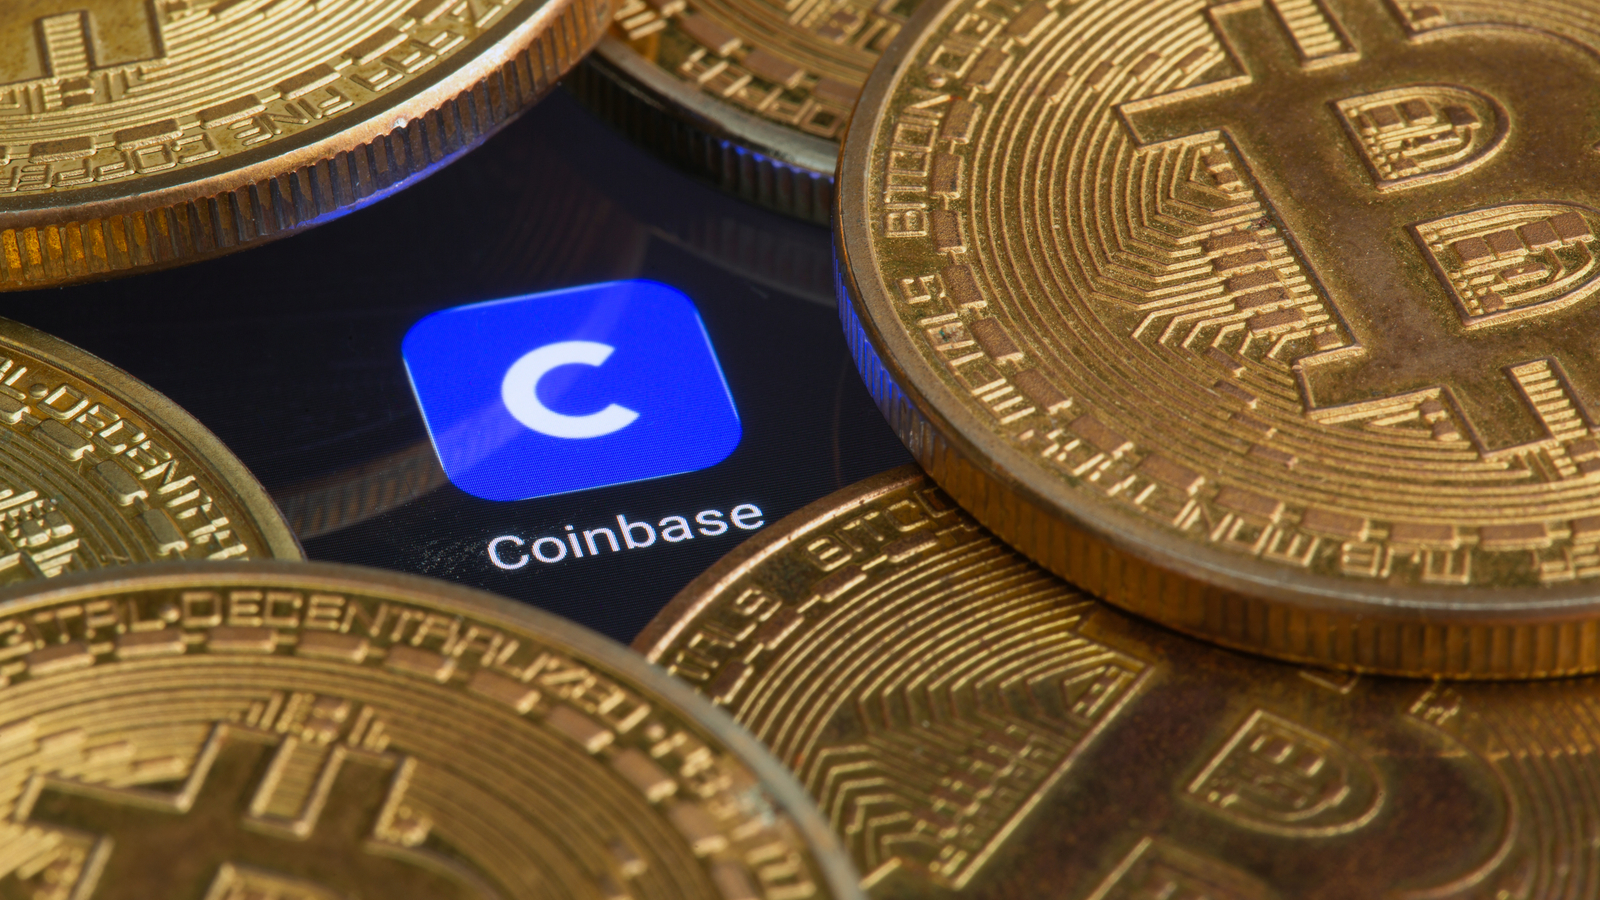 COIN stock Coinbase logo on screen with Bitcoin coins